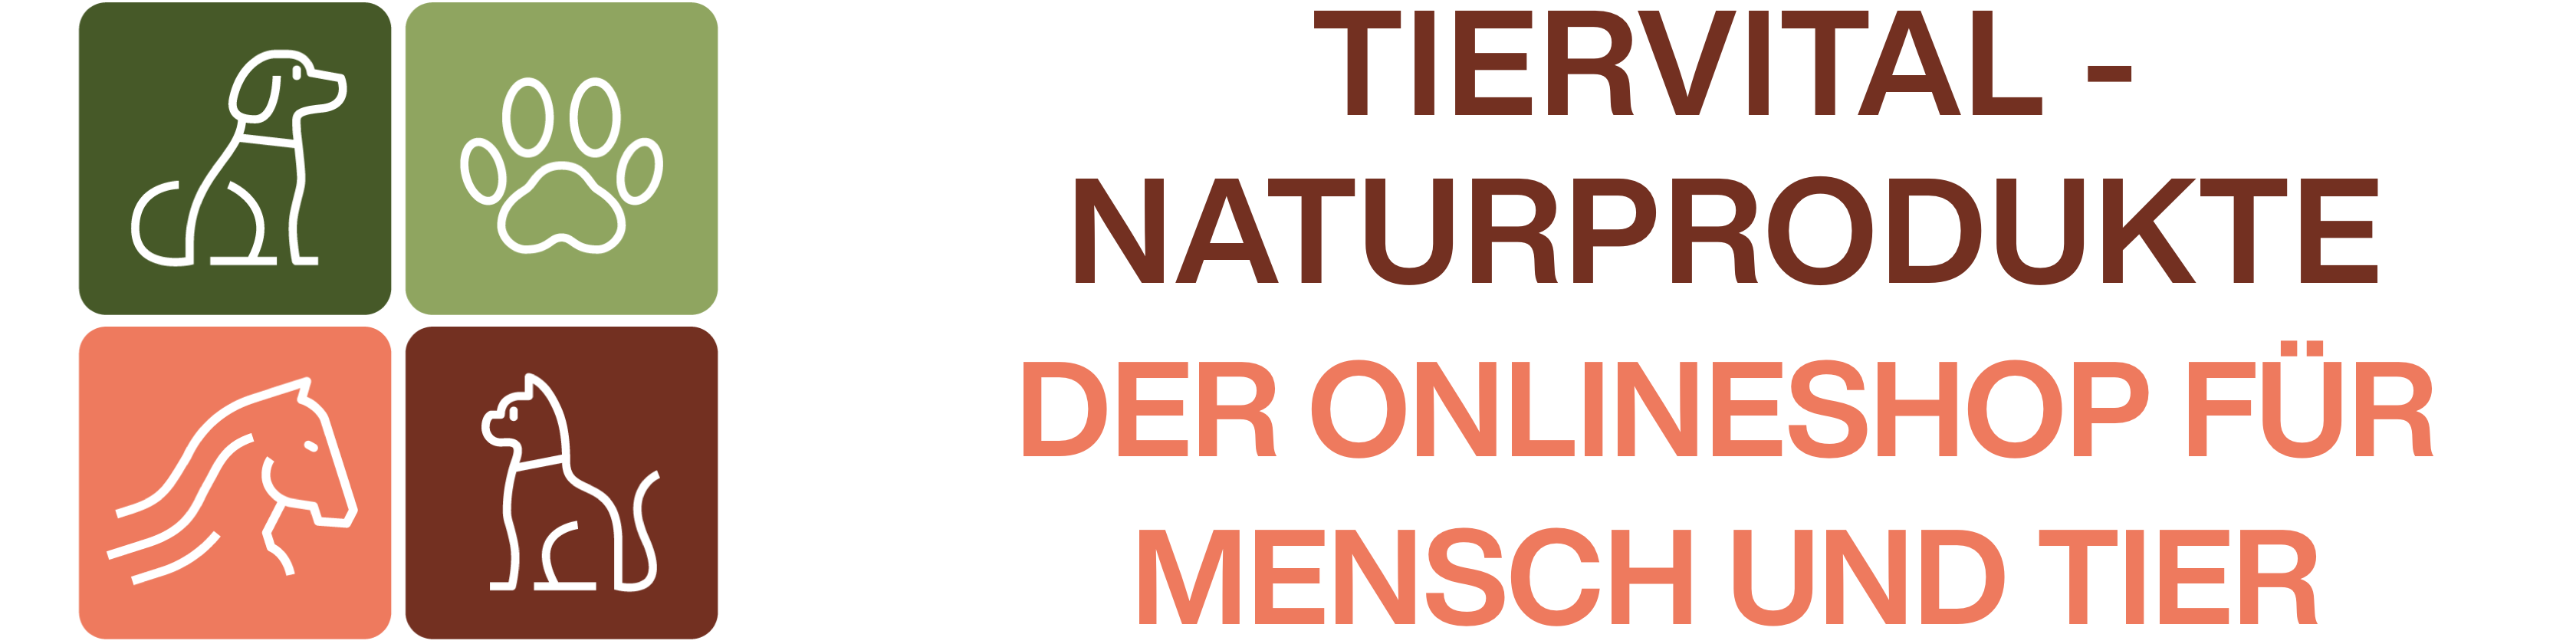 Logo Tiervital-naturprodukte